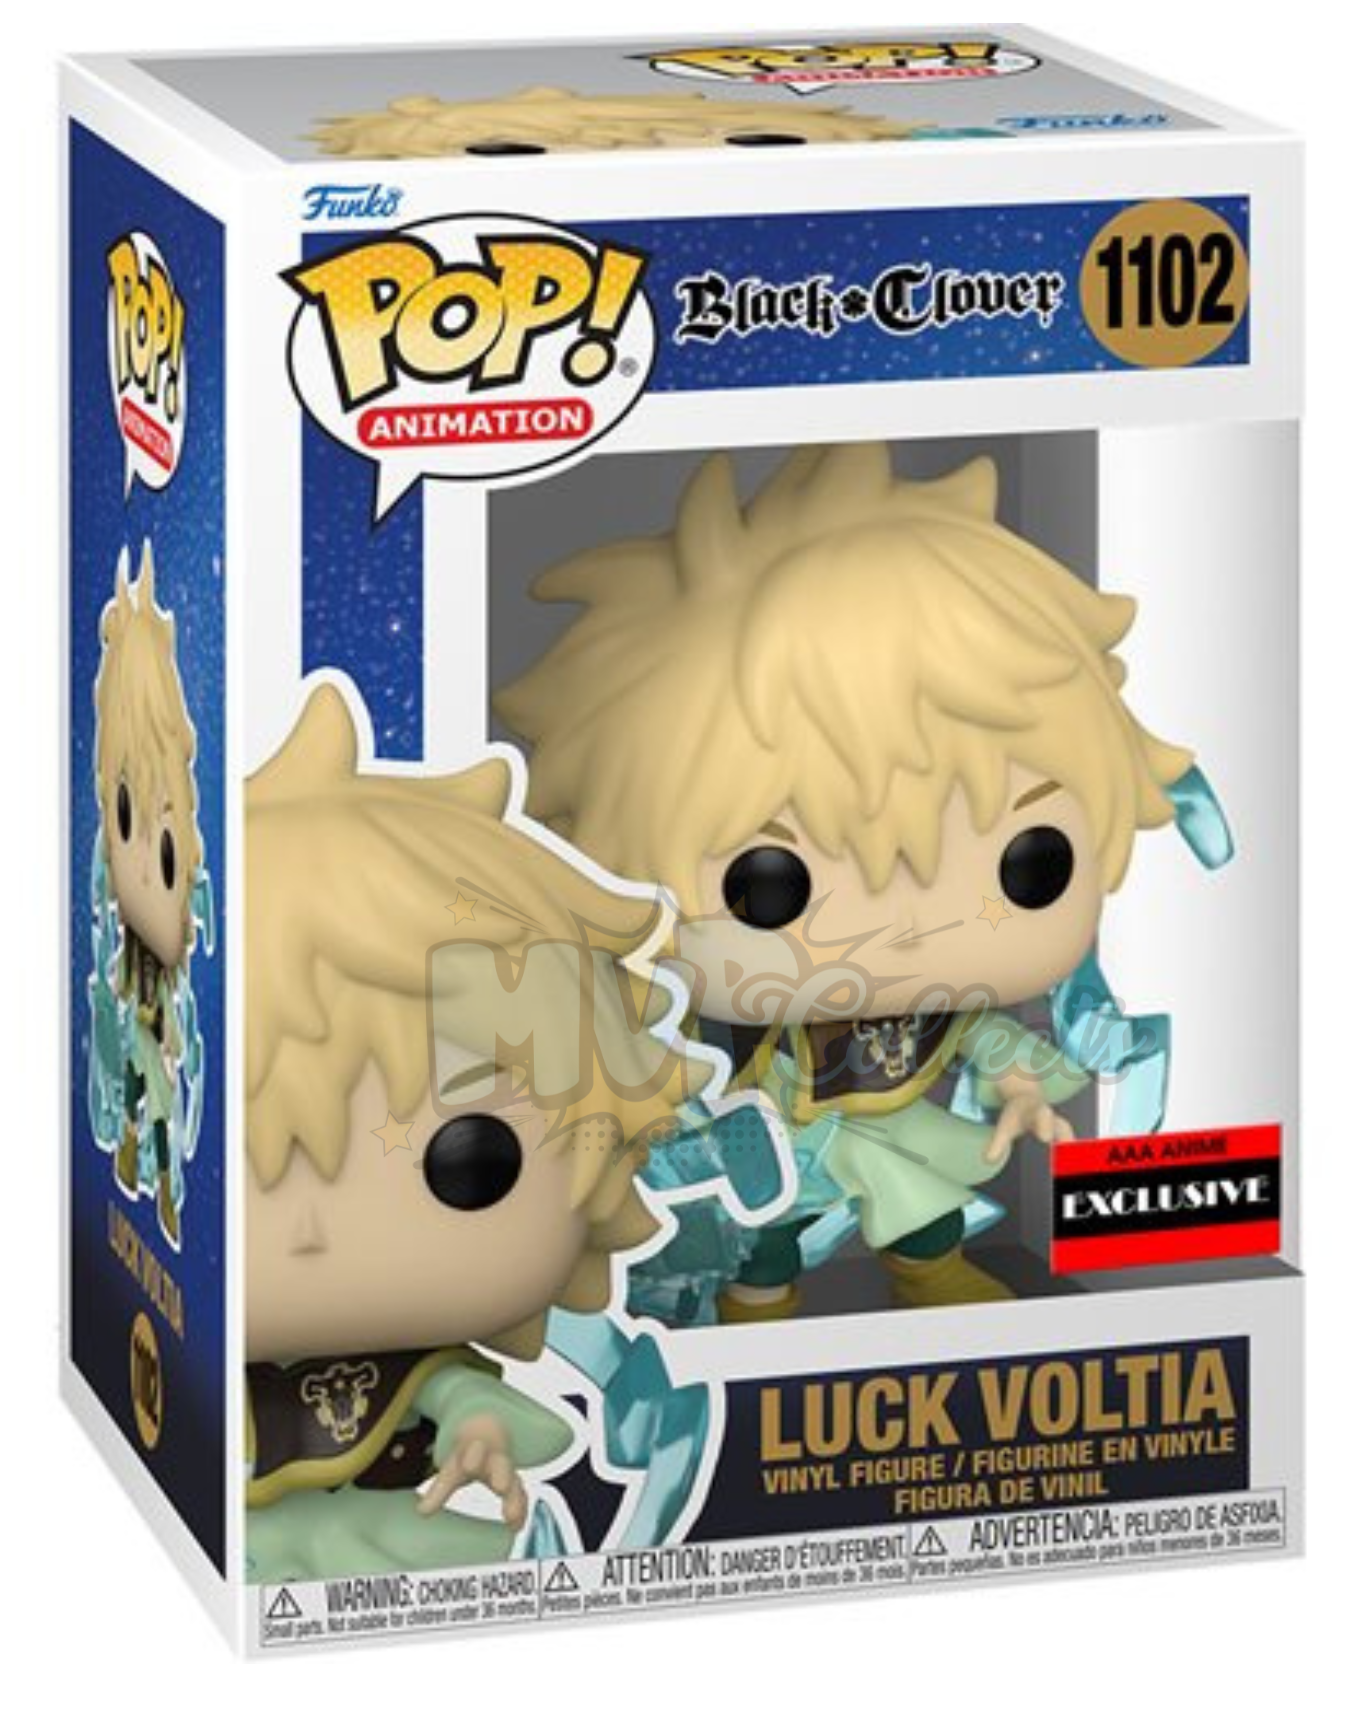 Luck Voltia AAA Exclusive POP! Black Clover - 1102